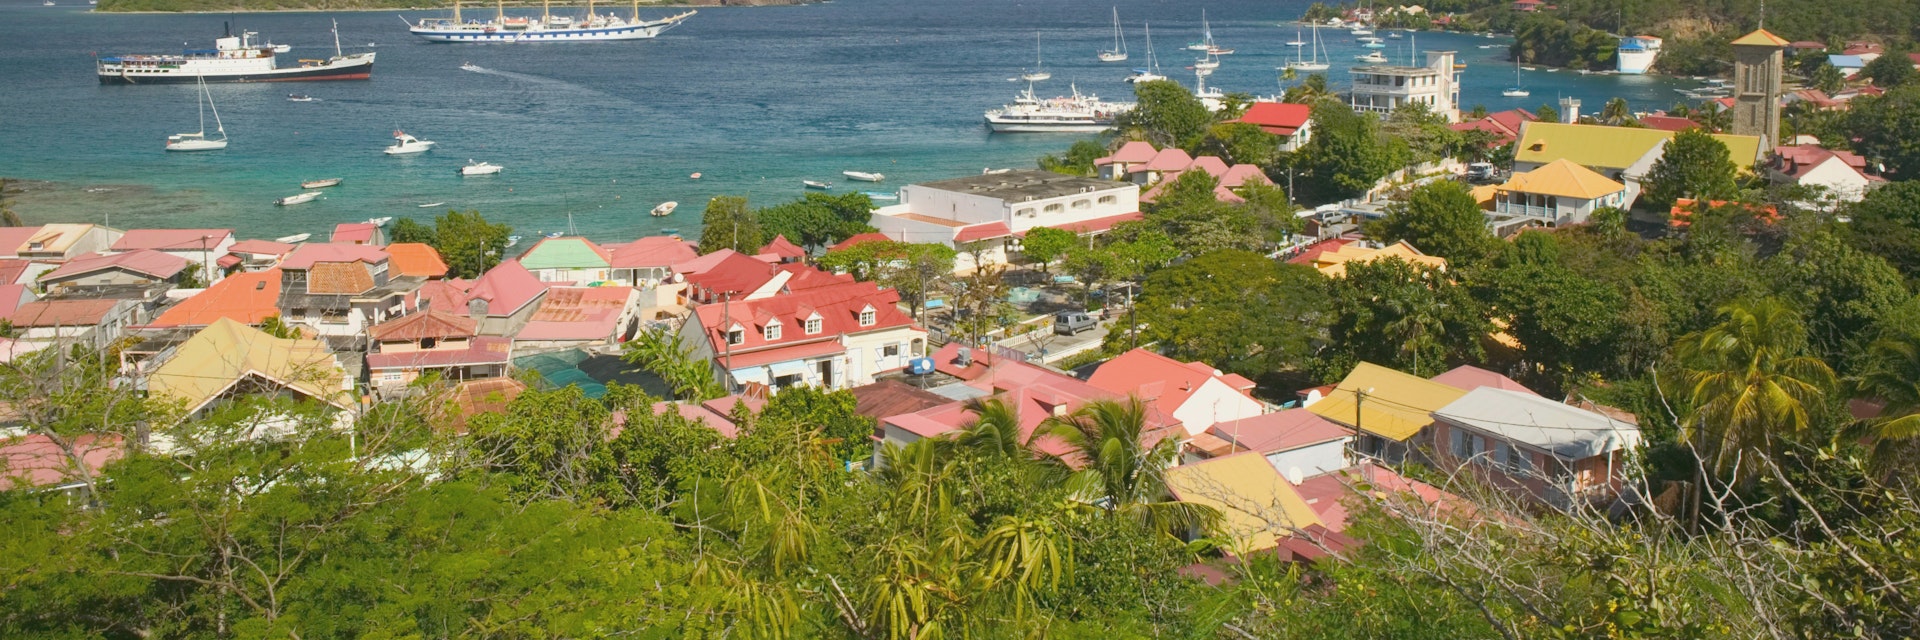 Harbor View, Bourg Des Saintes, Terre de Haut, Les Saintes, Grande Terre, Guadaloupe, French West Indies